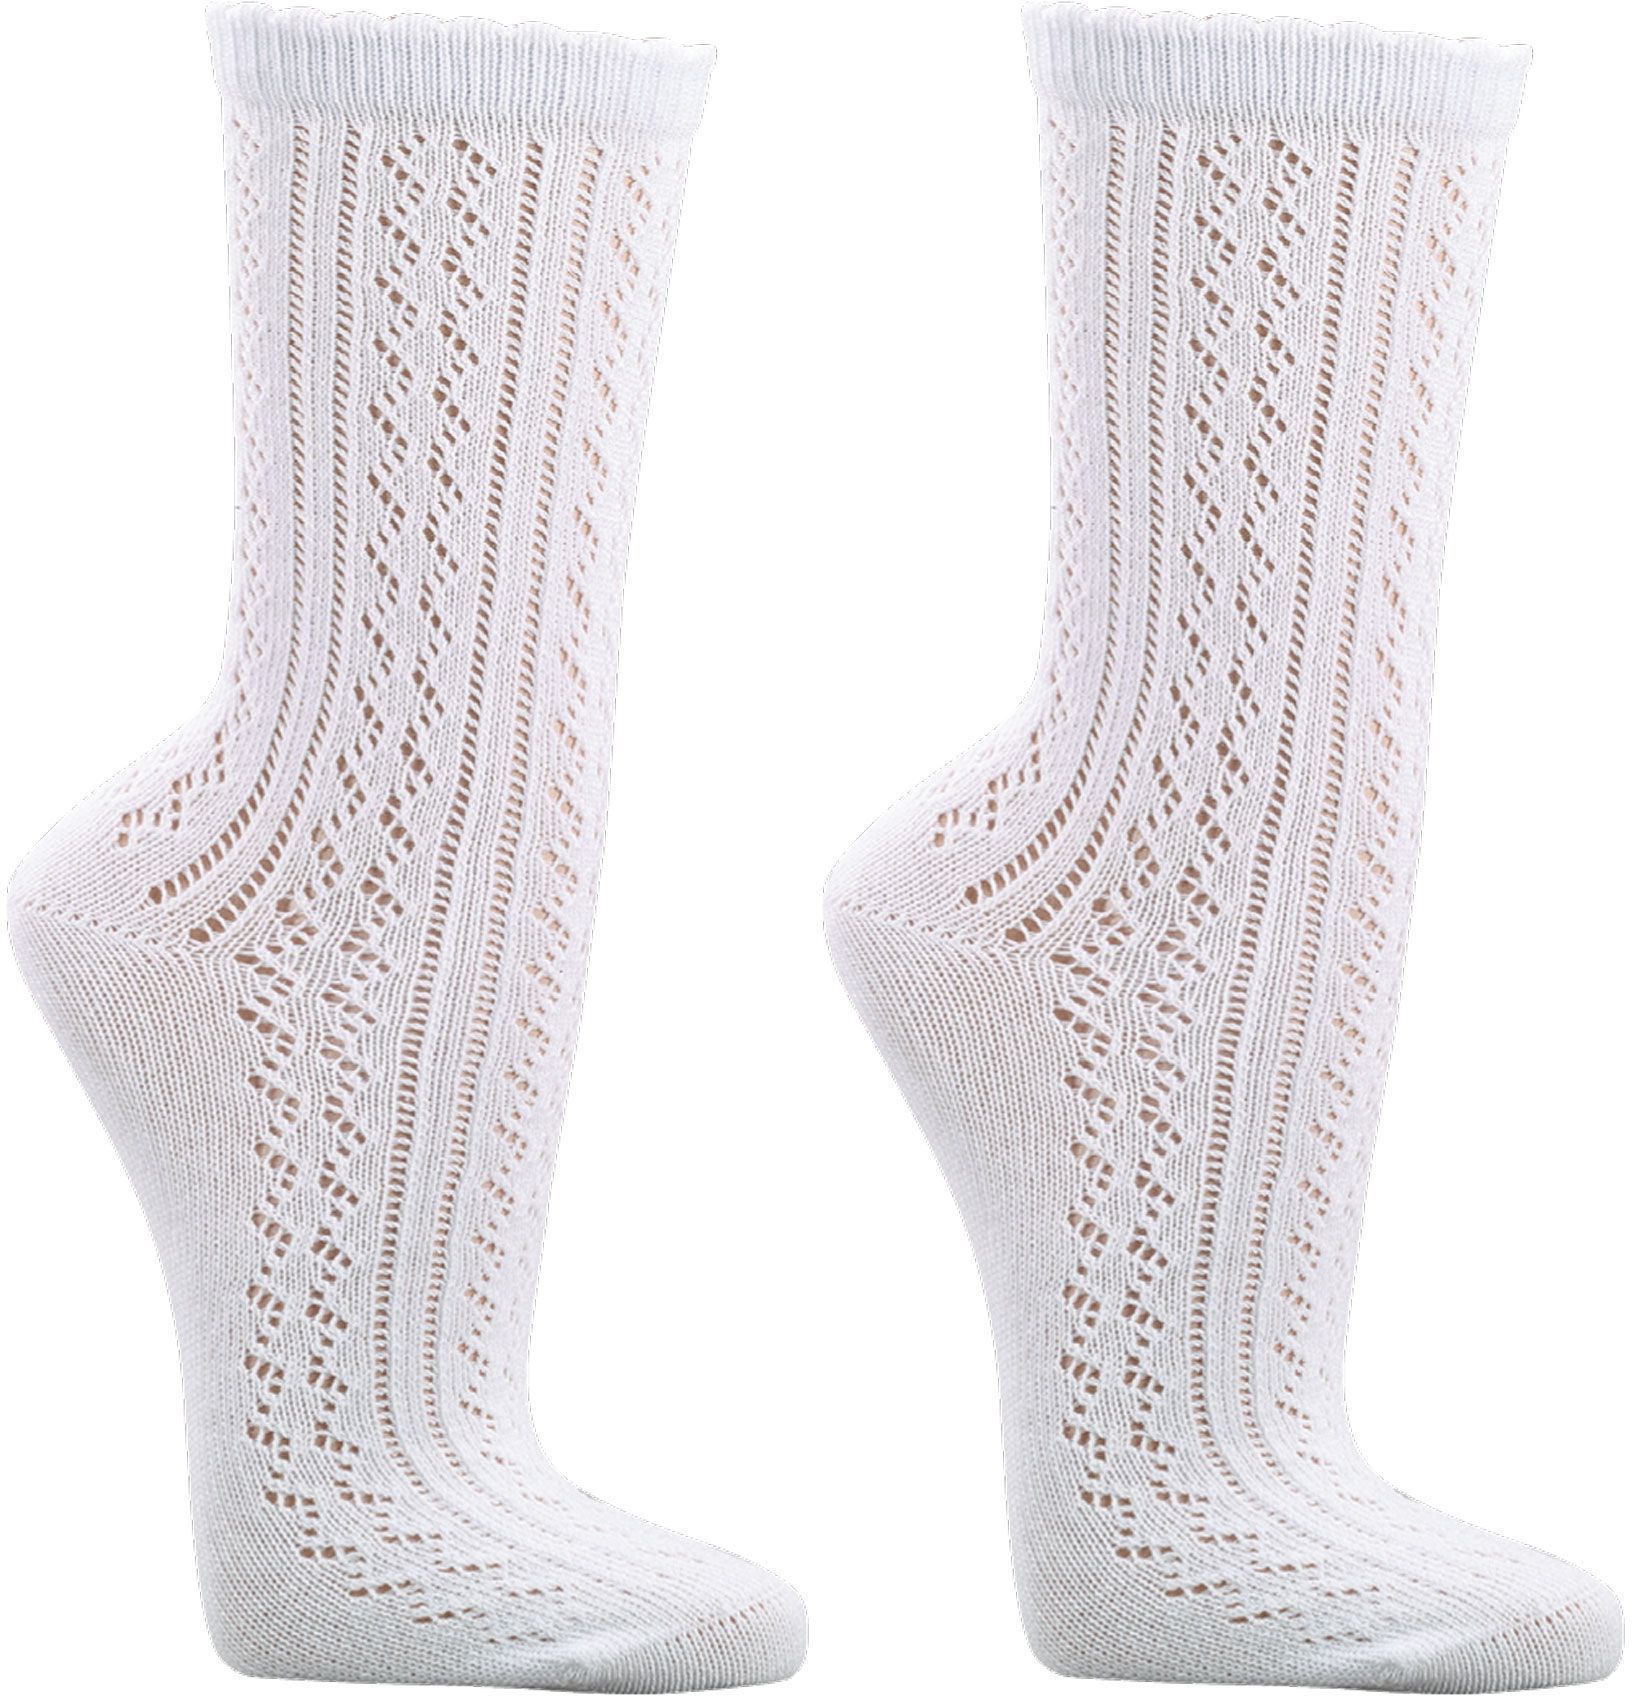 Häkellook-Socken für Teenager  und  Damen  3 Paar